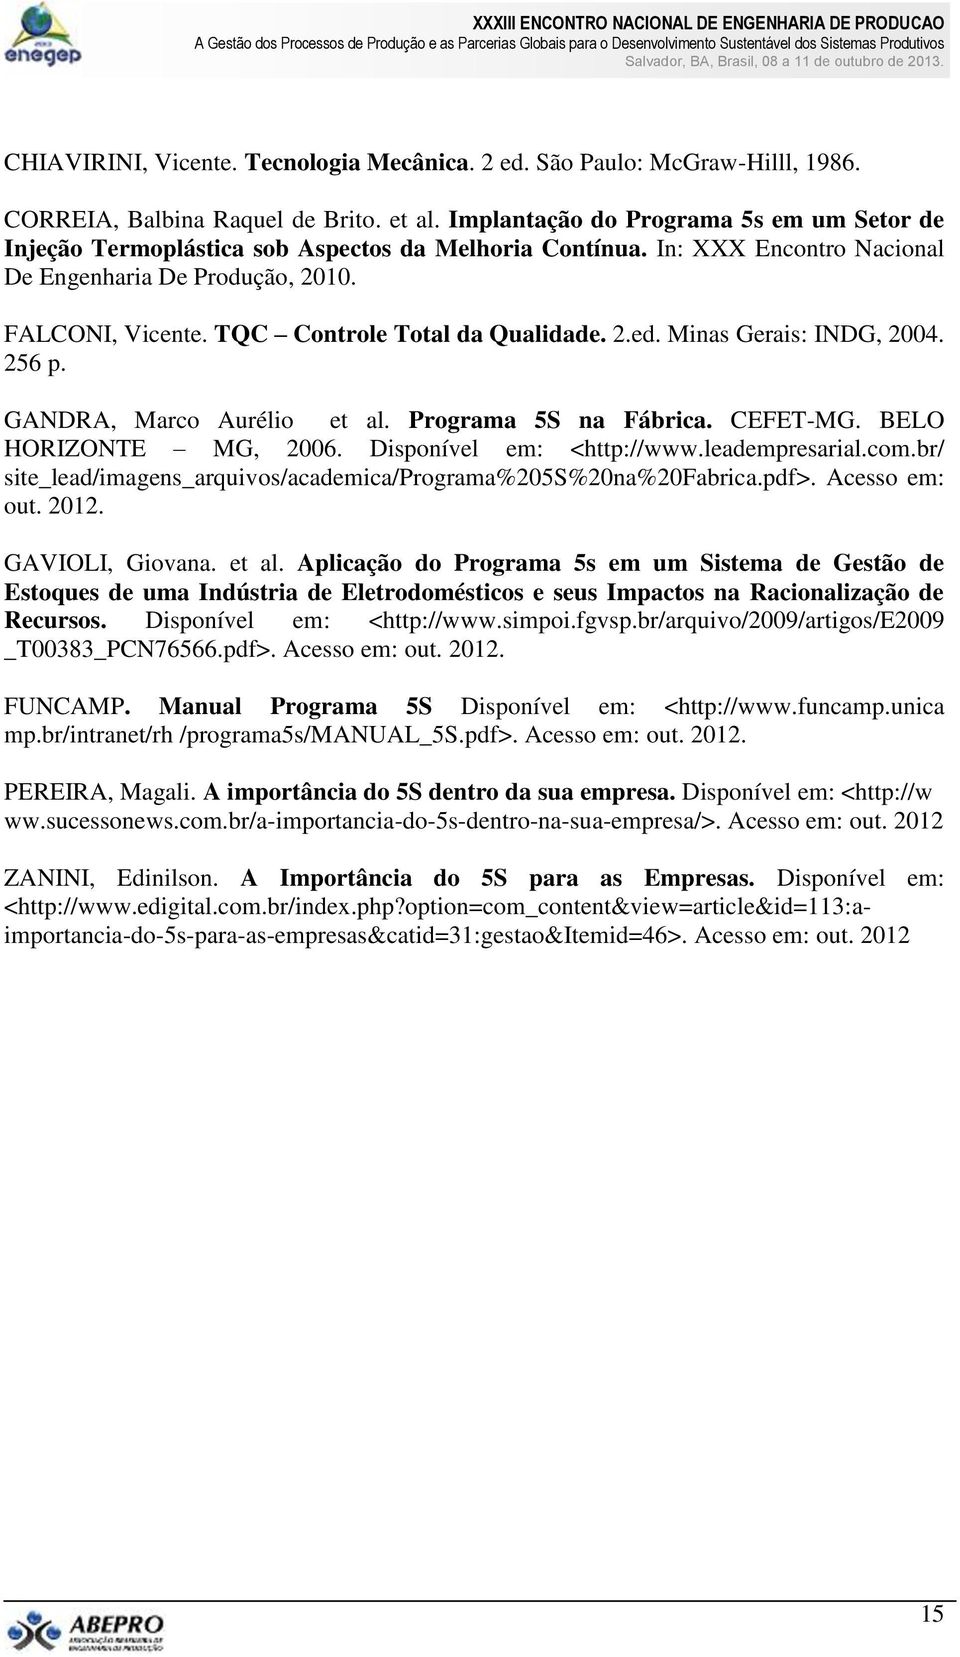 TQC Controle Total da Qualidade. 2.ed. Minas Gerais: INDG, 2004. 256 p. GANDRA, Marco Aurélio et al. Programa 5S na Fábrica. CEFET-MG. BELO HORIZONTE MG, 2006. Disponível em: <http://www.